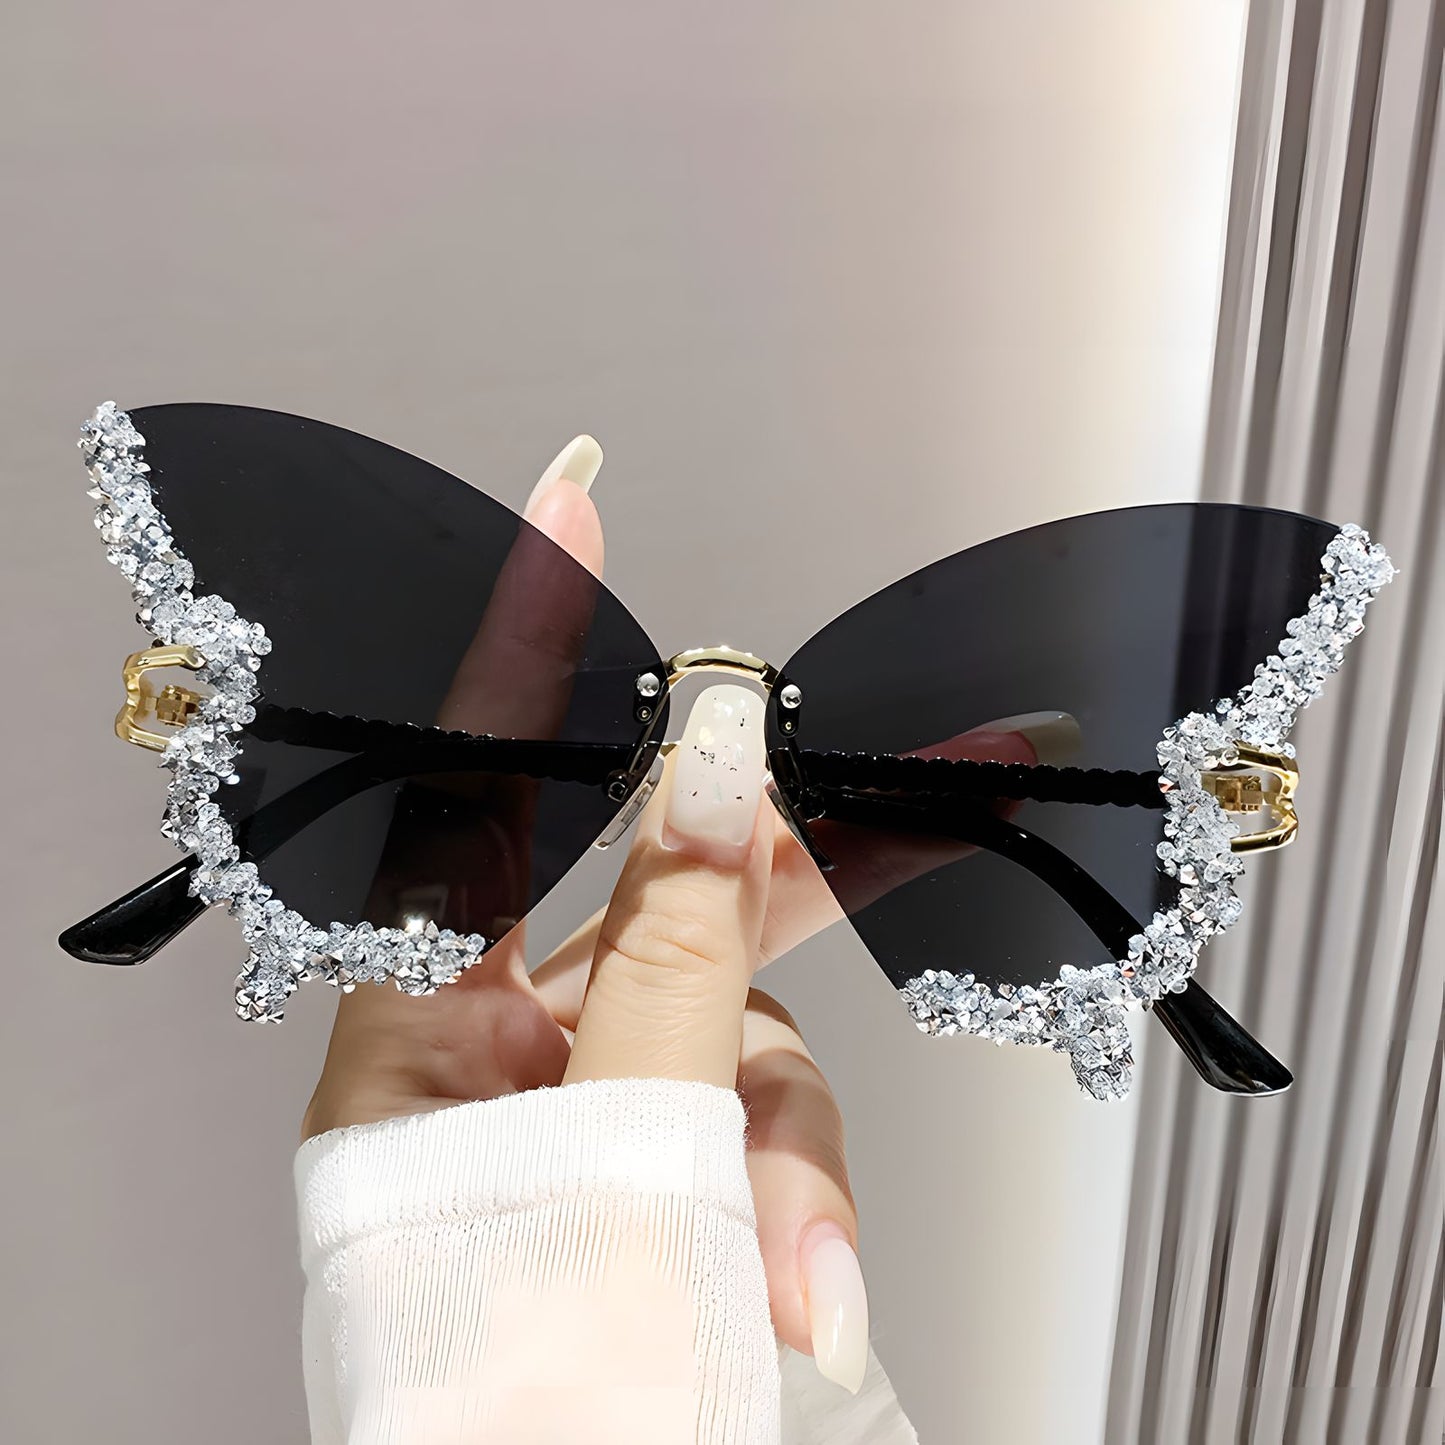 TXOME Myra Bling Butterfly Glasses